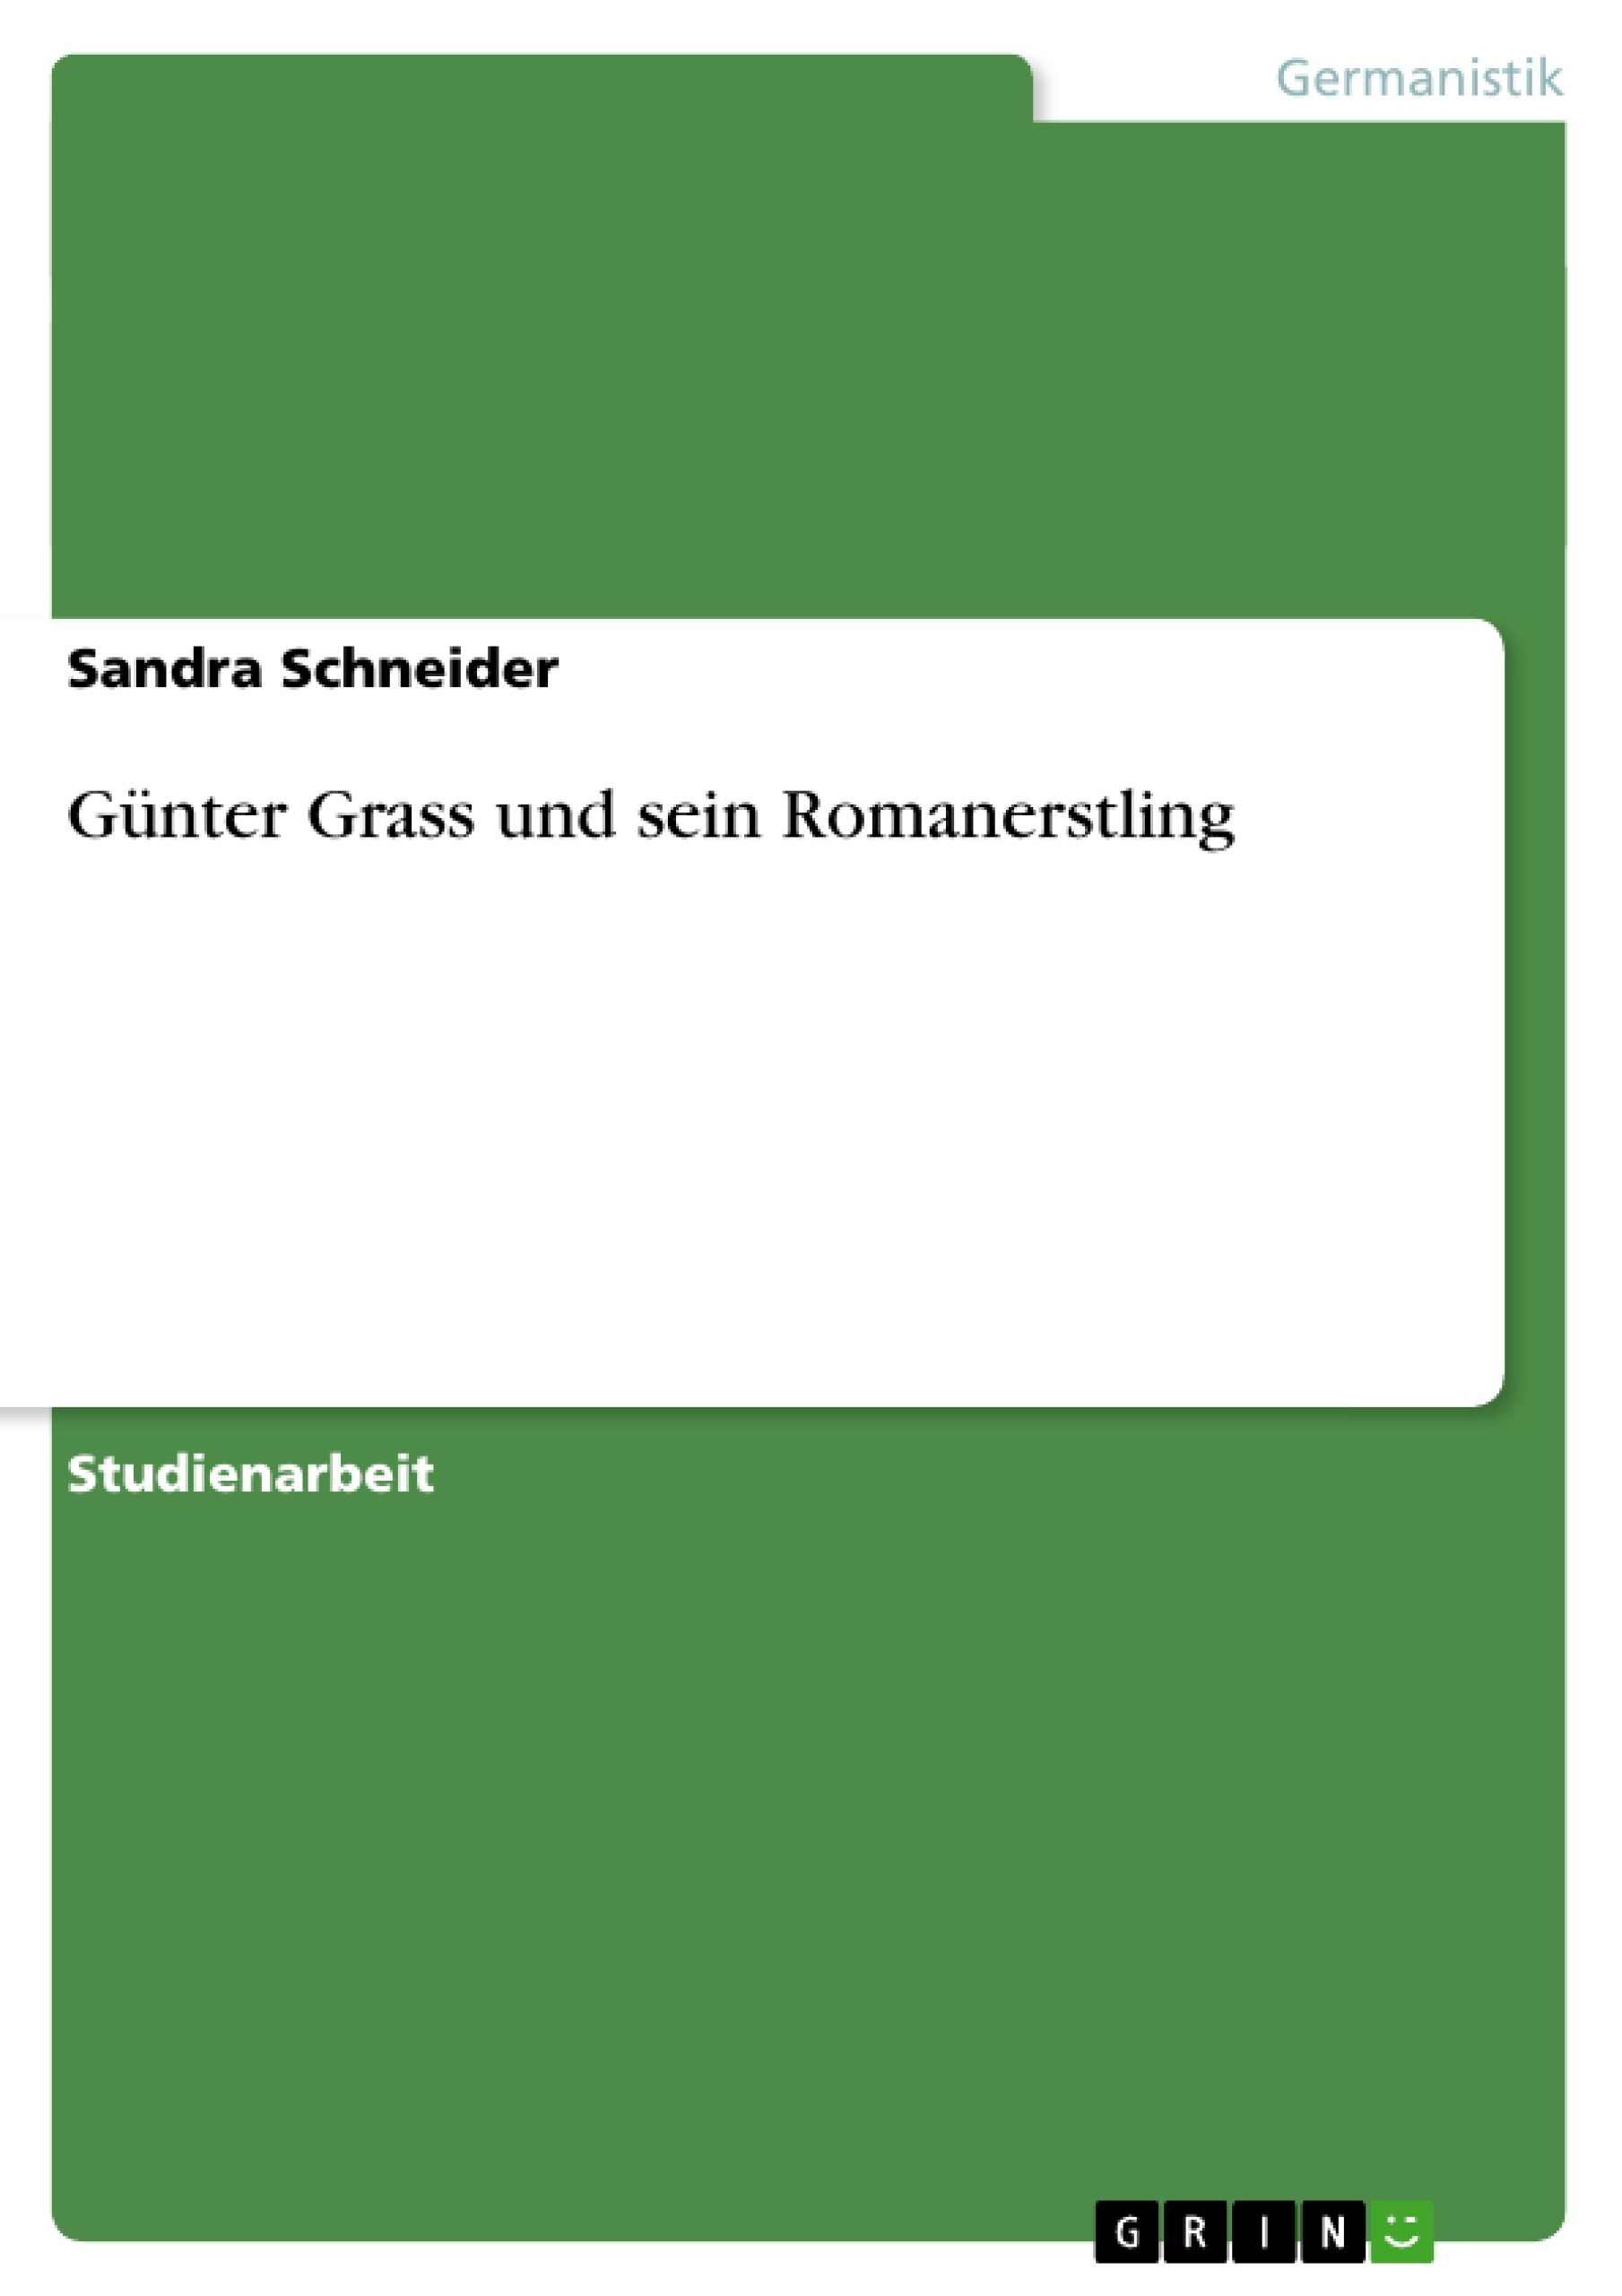 Título: Günter Grass und sein Romanerstling